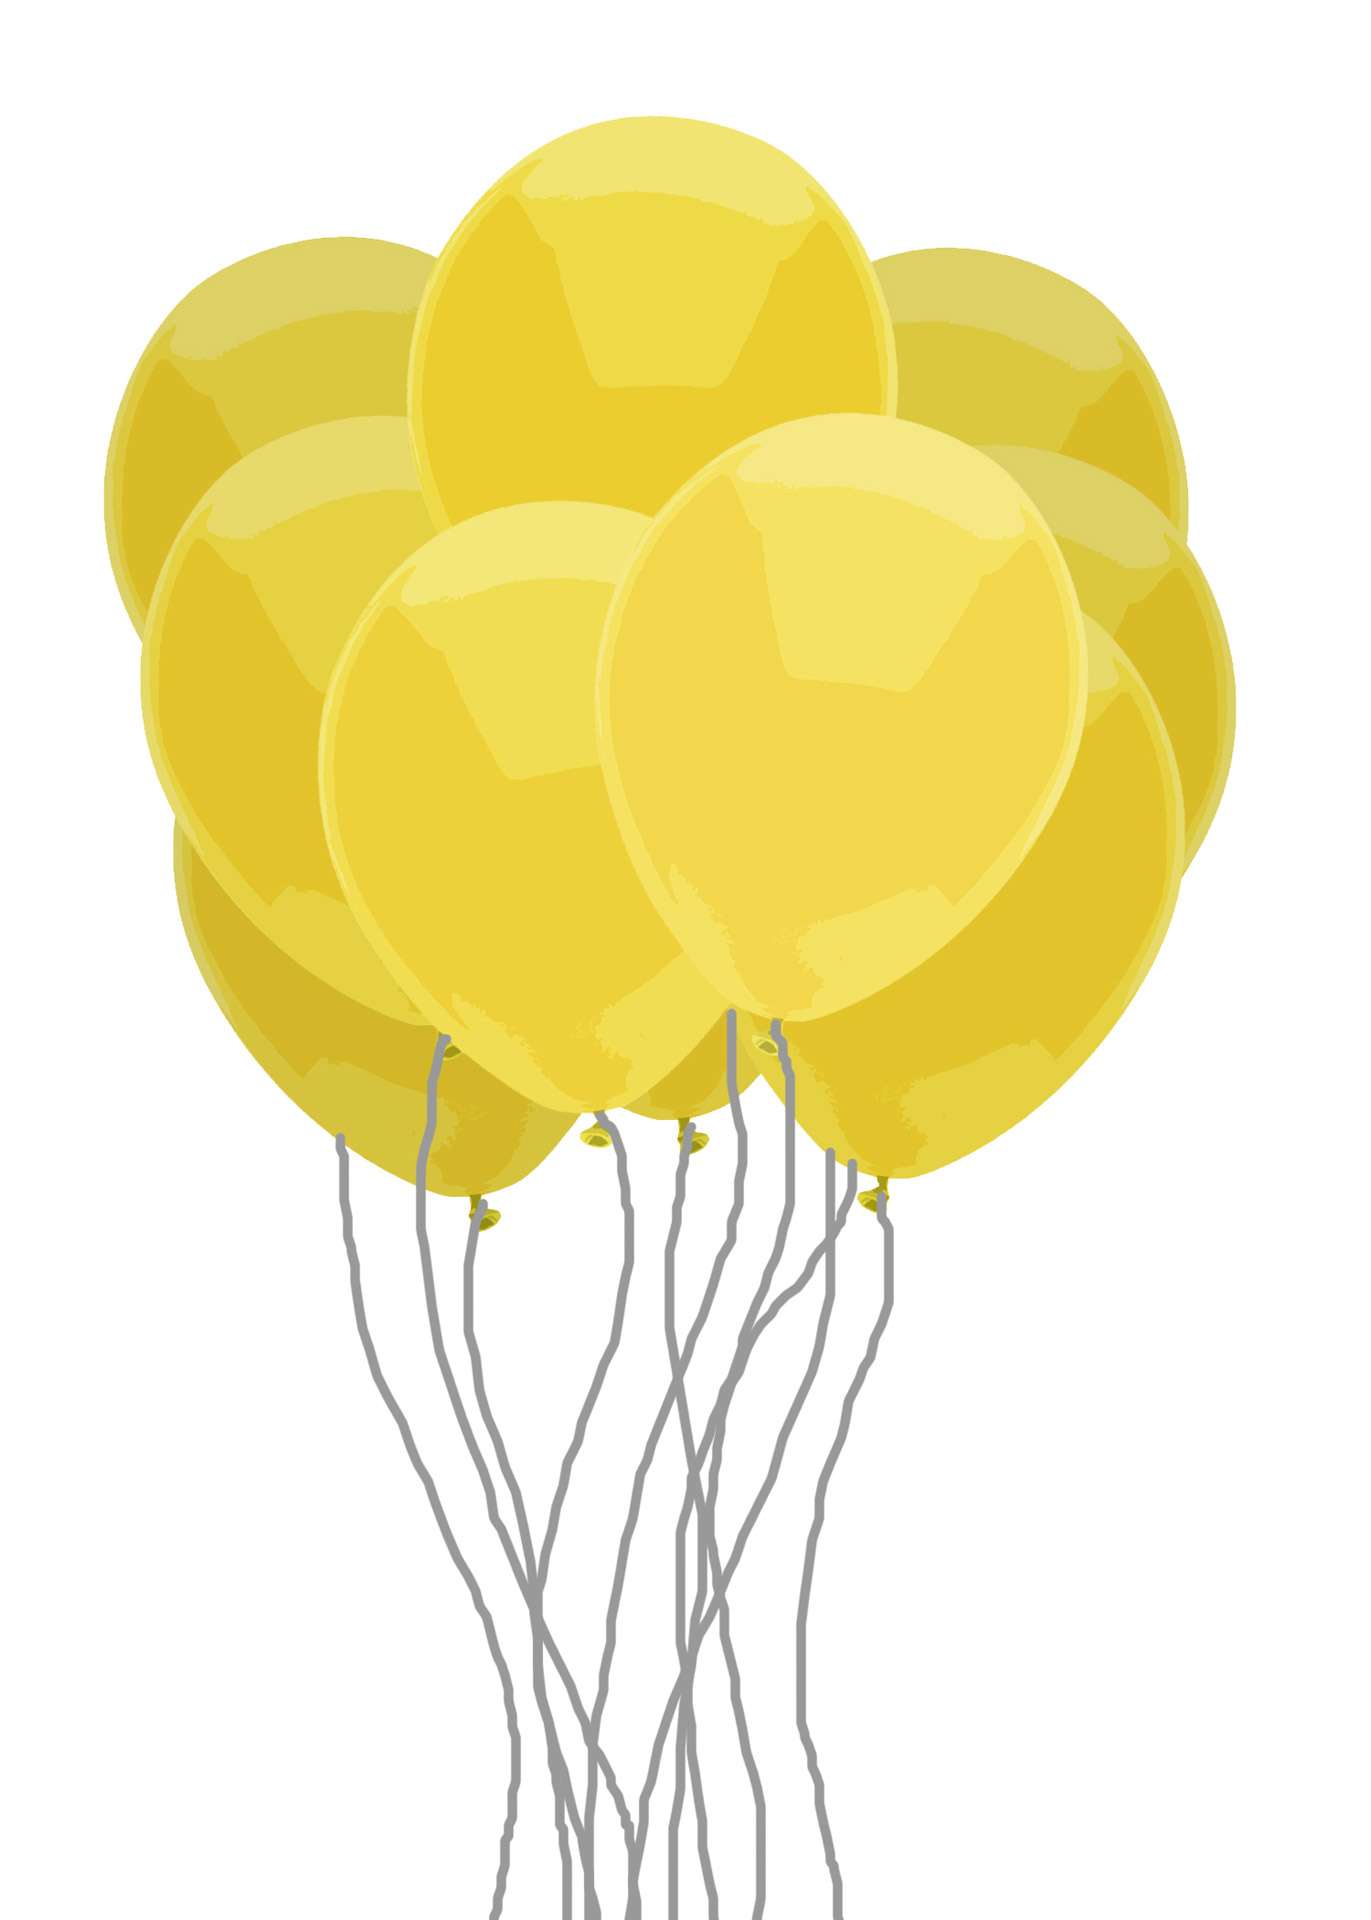 yellow balloon clipart - photo #26